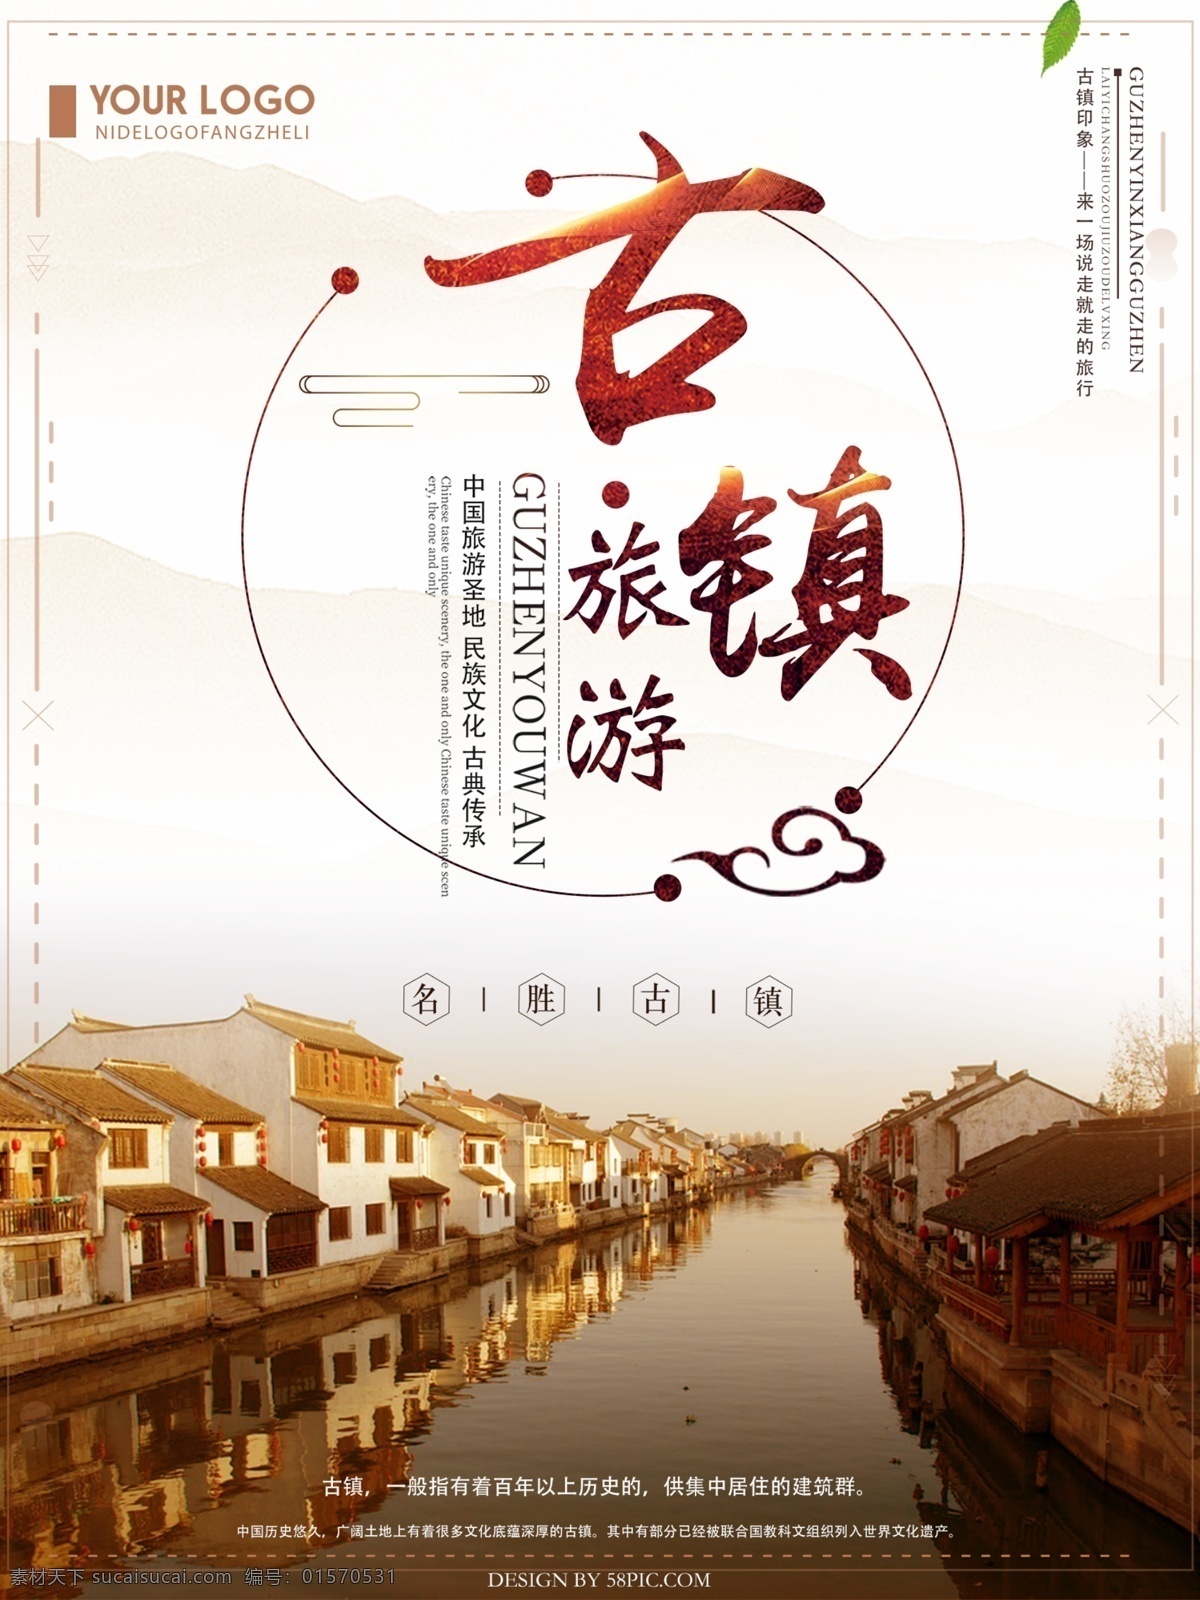 唯美 古镇 旅游 海报 古镇旅游 暖色旅游海报 中国风旅游 旅游海报